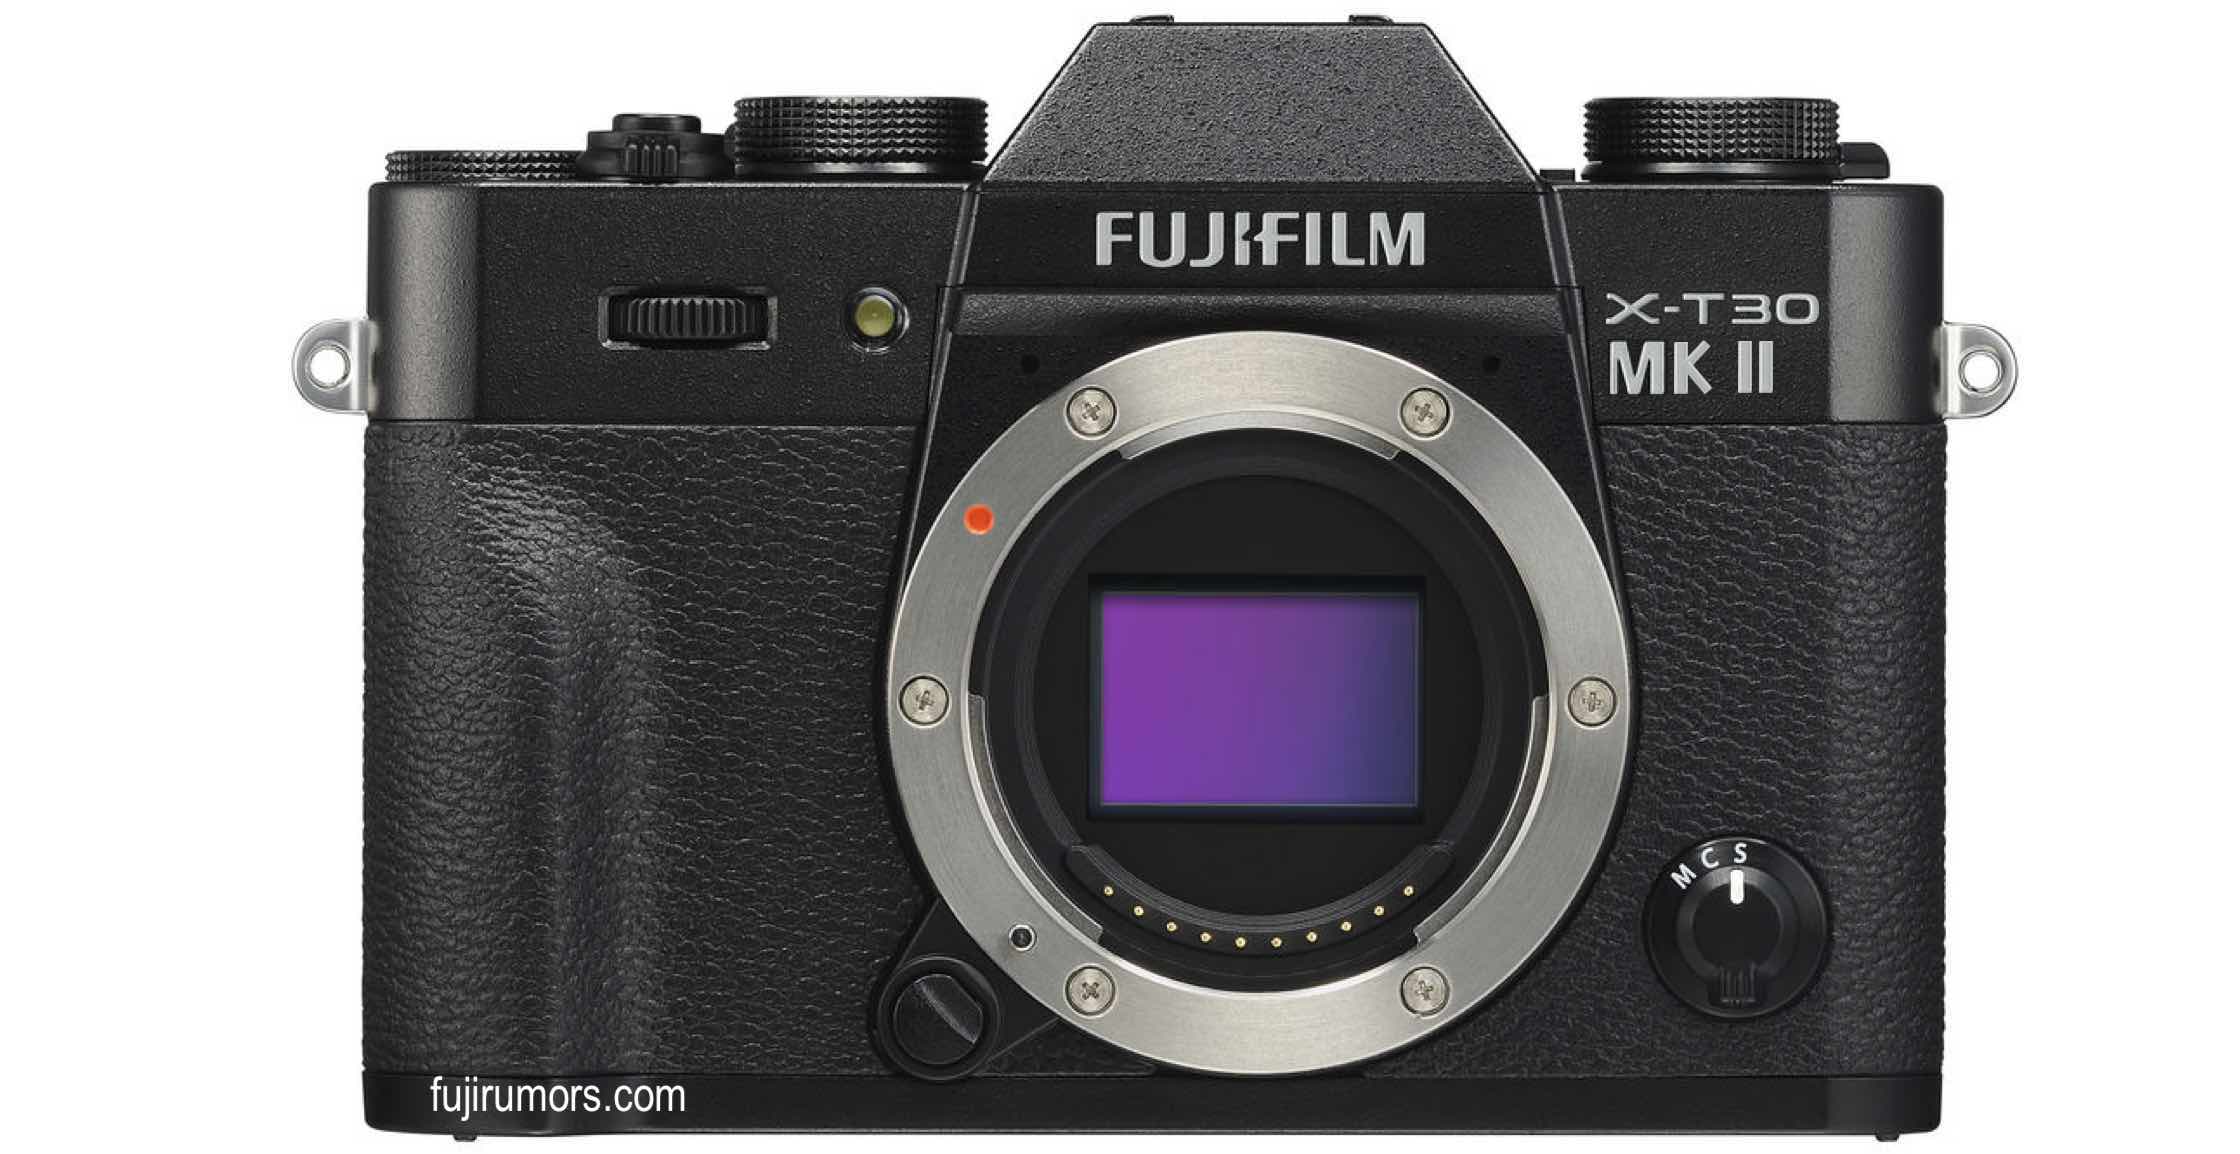 Camera Messenger Canvas Shoulder Bag For FUJIFILM X-T3 X-T30 X-T100 X-A3 X-E3  | eBay